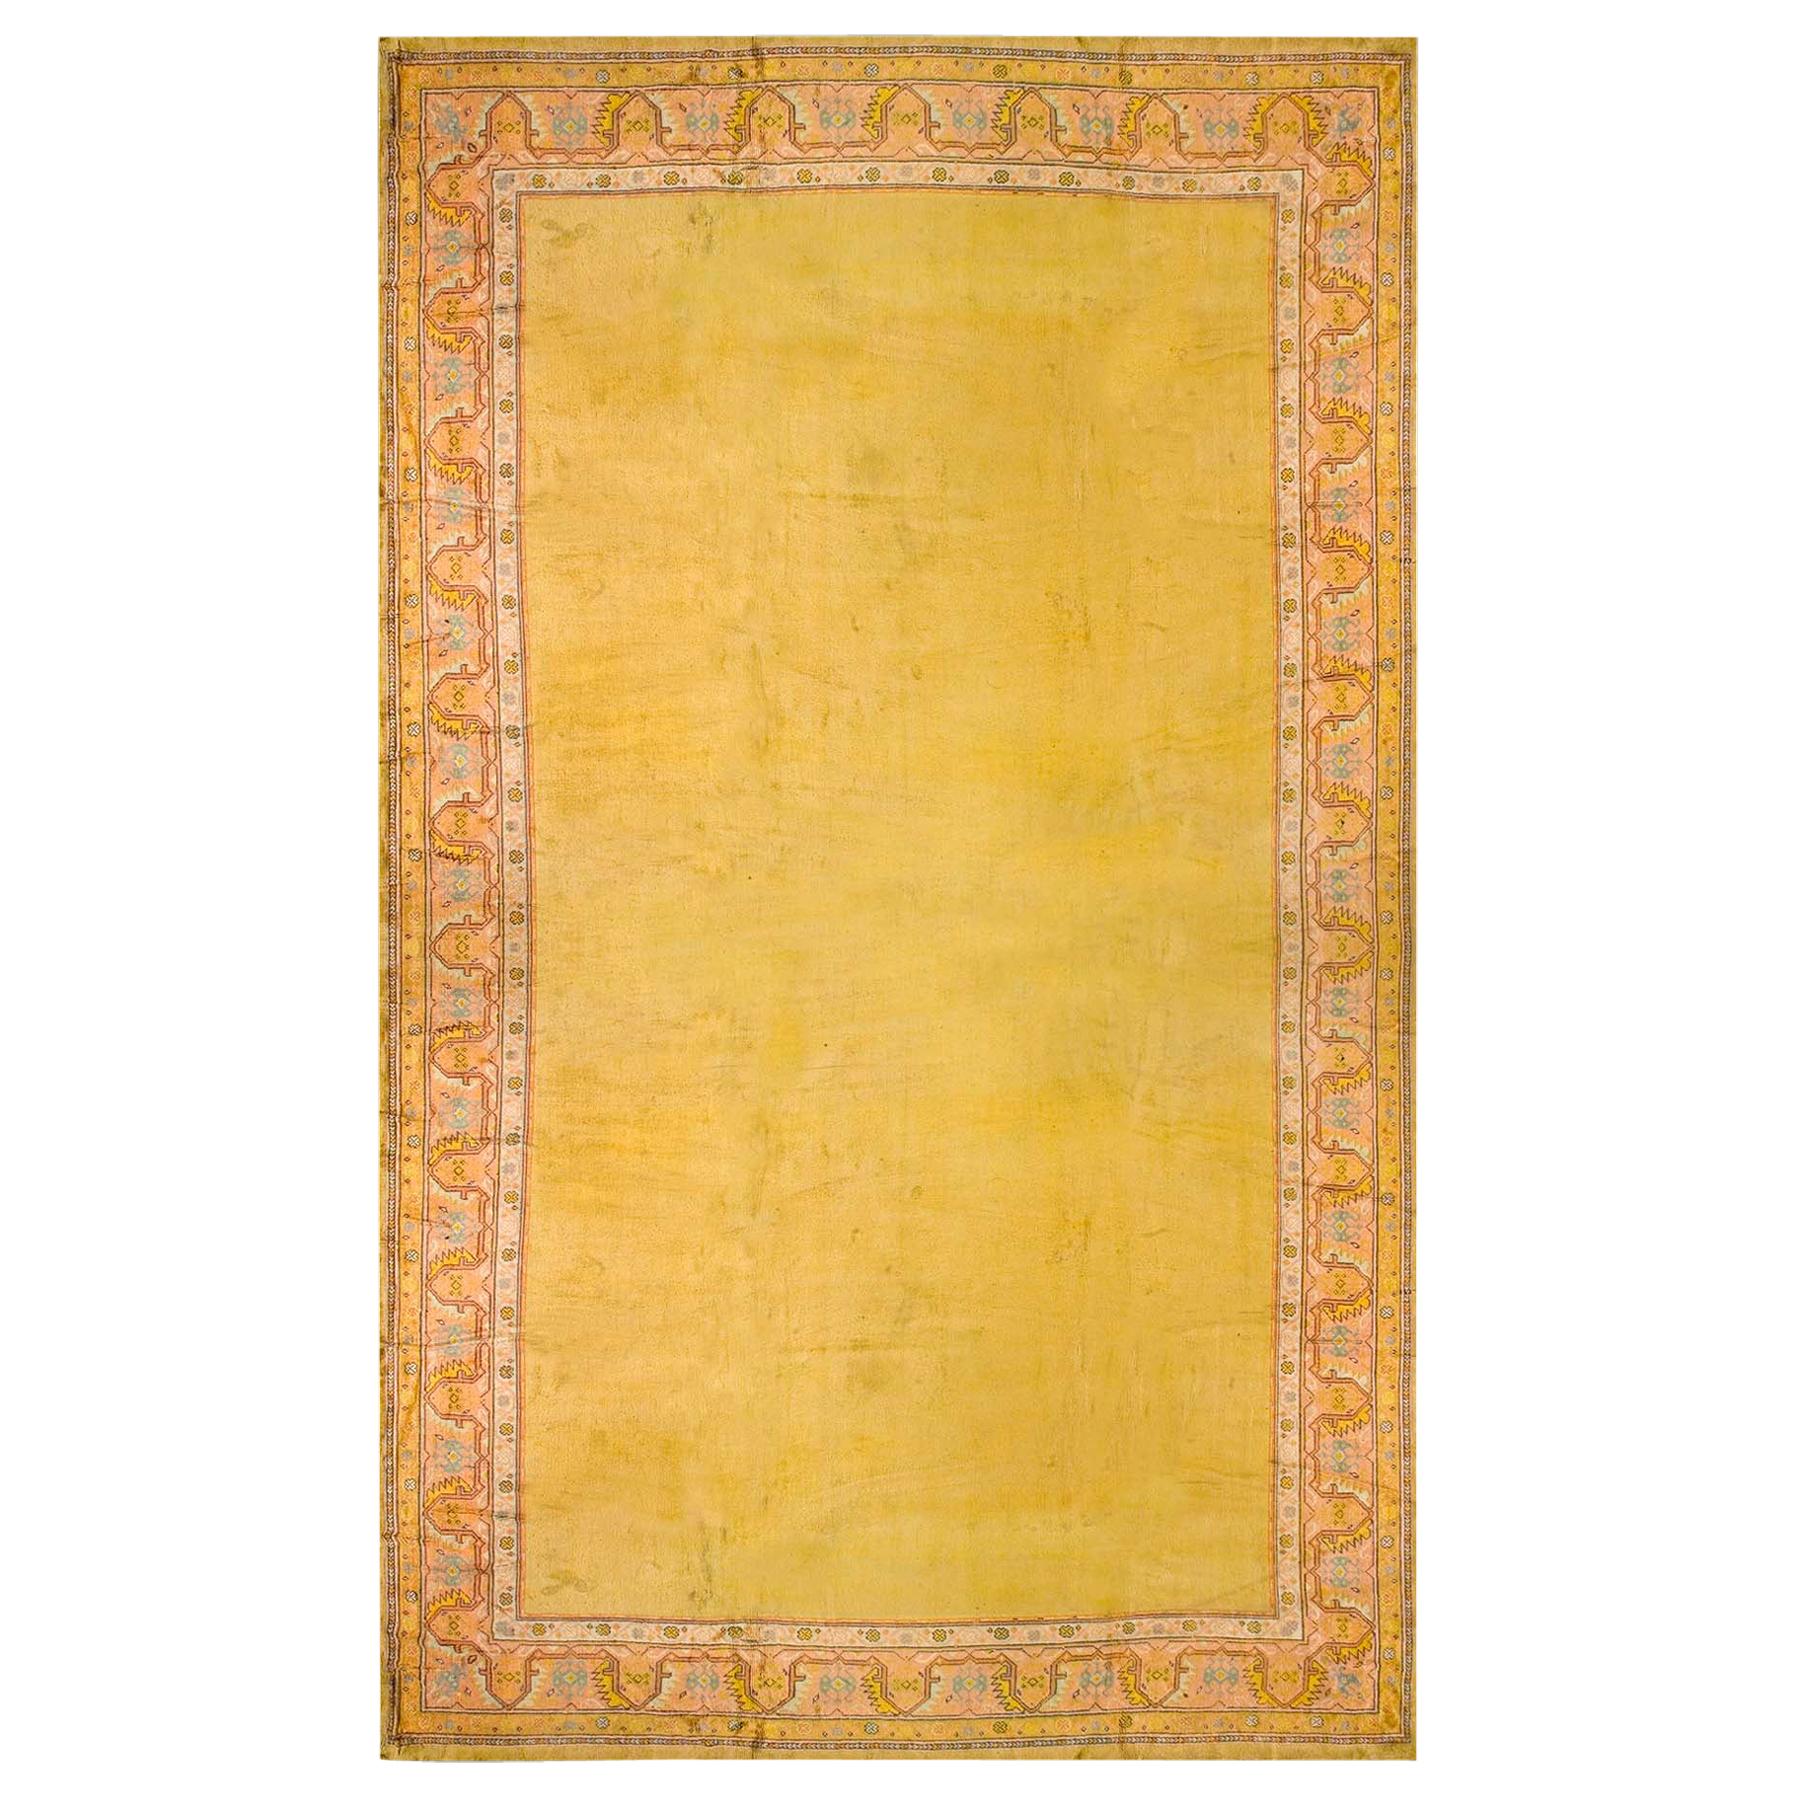 Irischer Donegal Arts & Crafts-Teppich des frühen 20. Jahrhunderts ( 15'' x 32'' - 457 x 976 )